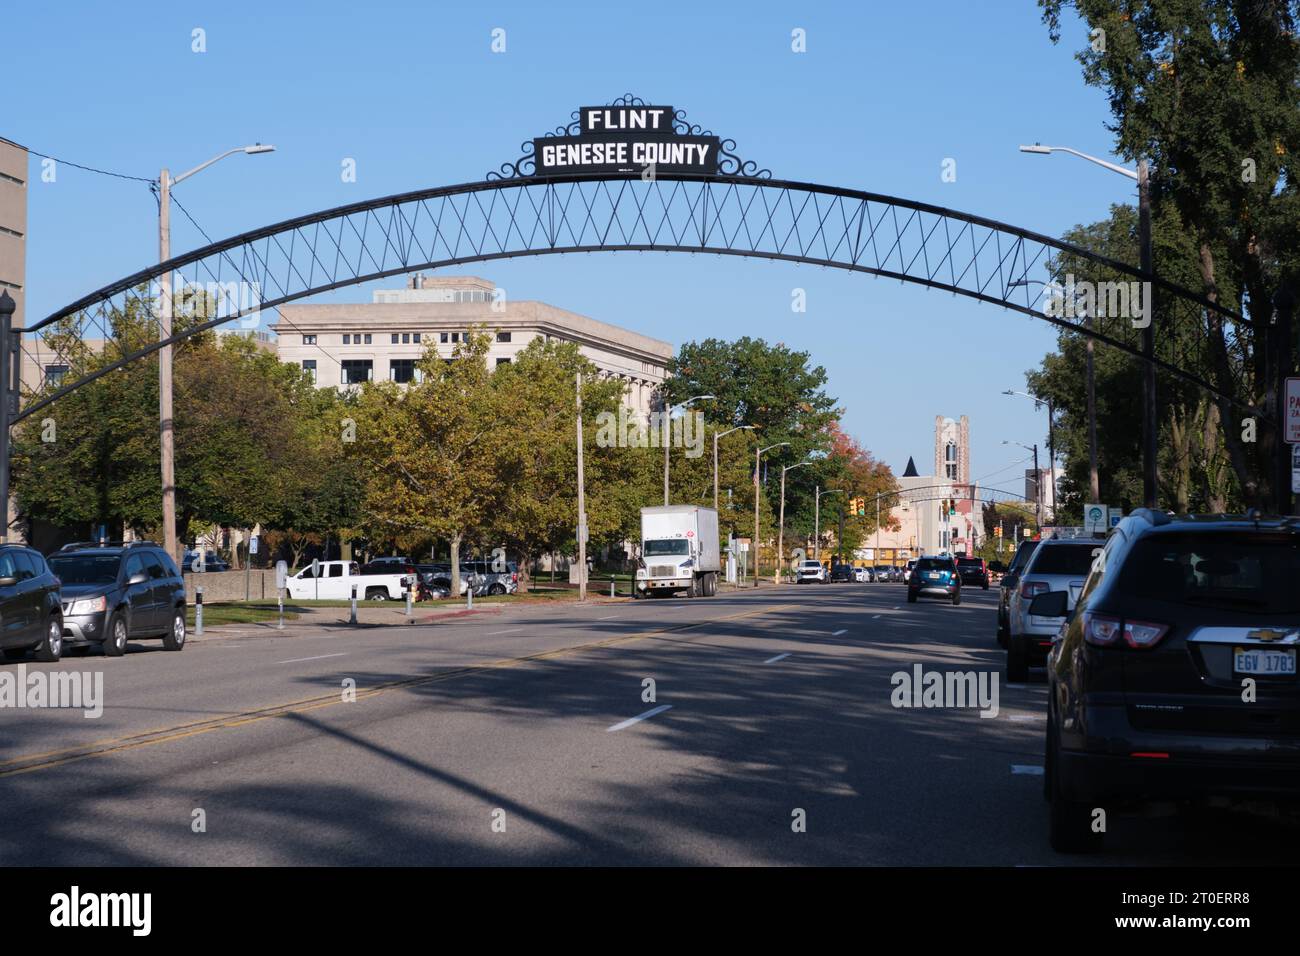 Flint Genesee County-Schild in der Innenstadt von Flint Michigan USA Stockfoto